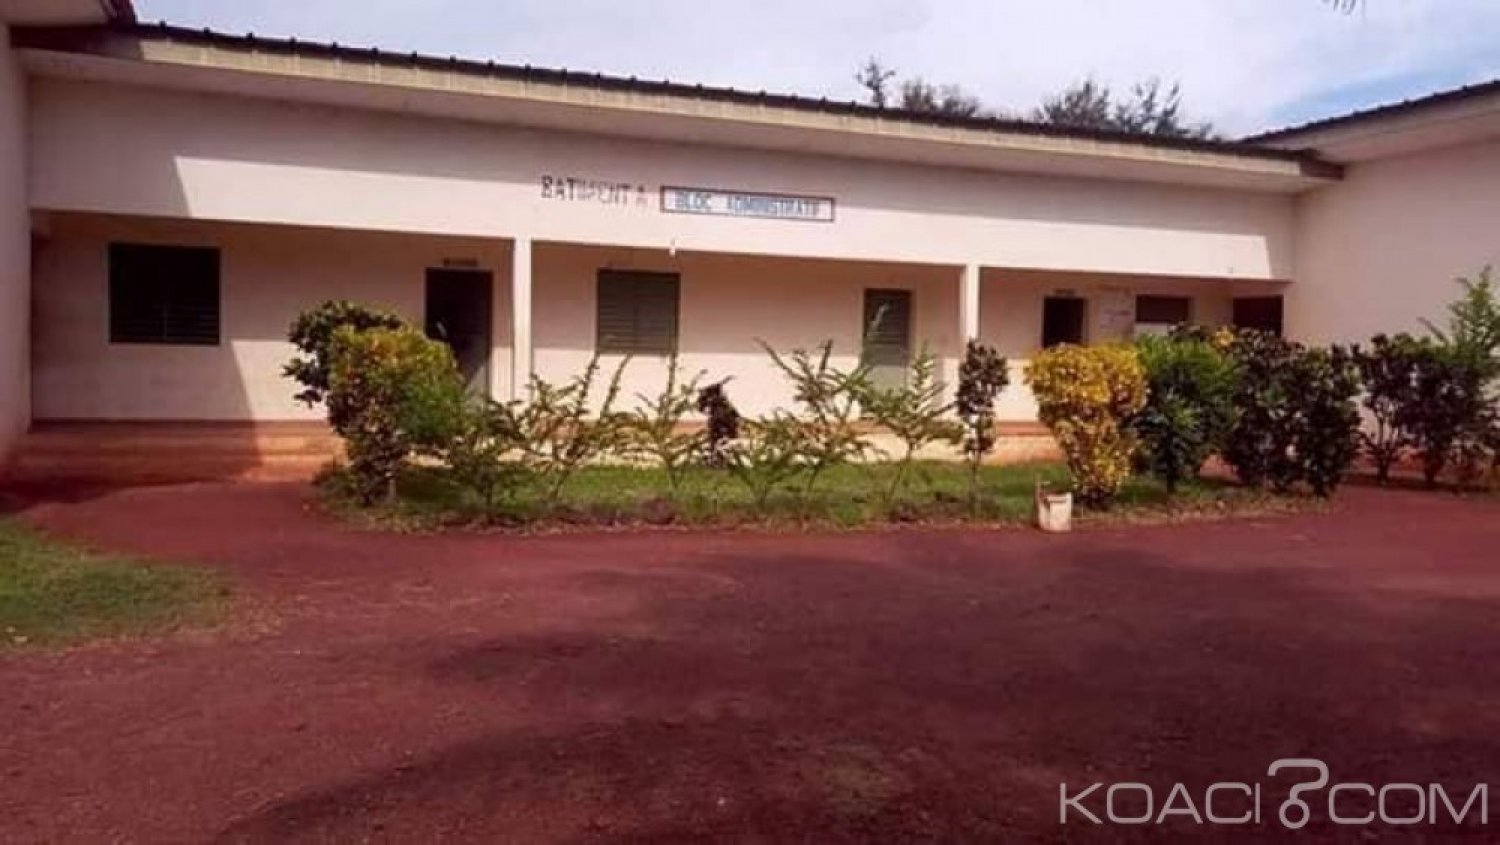 Côte d'Ivoire : À Logoualé, le proviseur empêche la reprise des cours après les congés